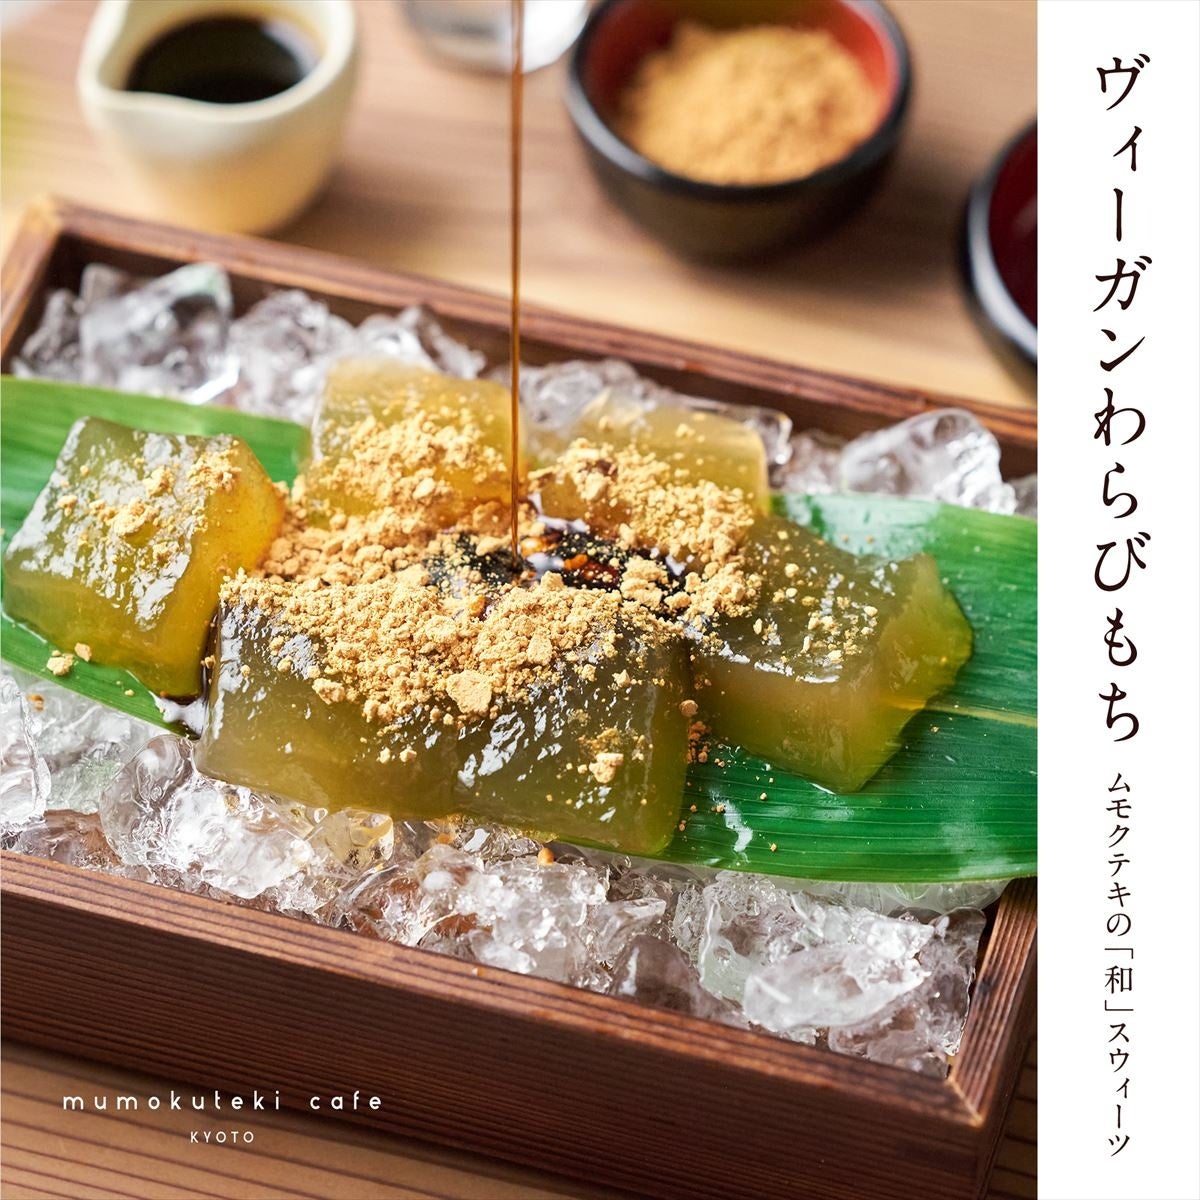 京都のヴィーガン対応カフェ「mumokuteki cafe KYOTO」が、和スイーツ「ヴィーガンわらびもち」を発売